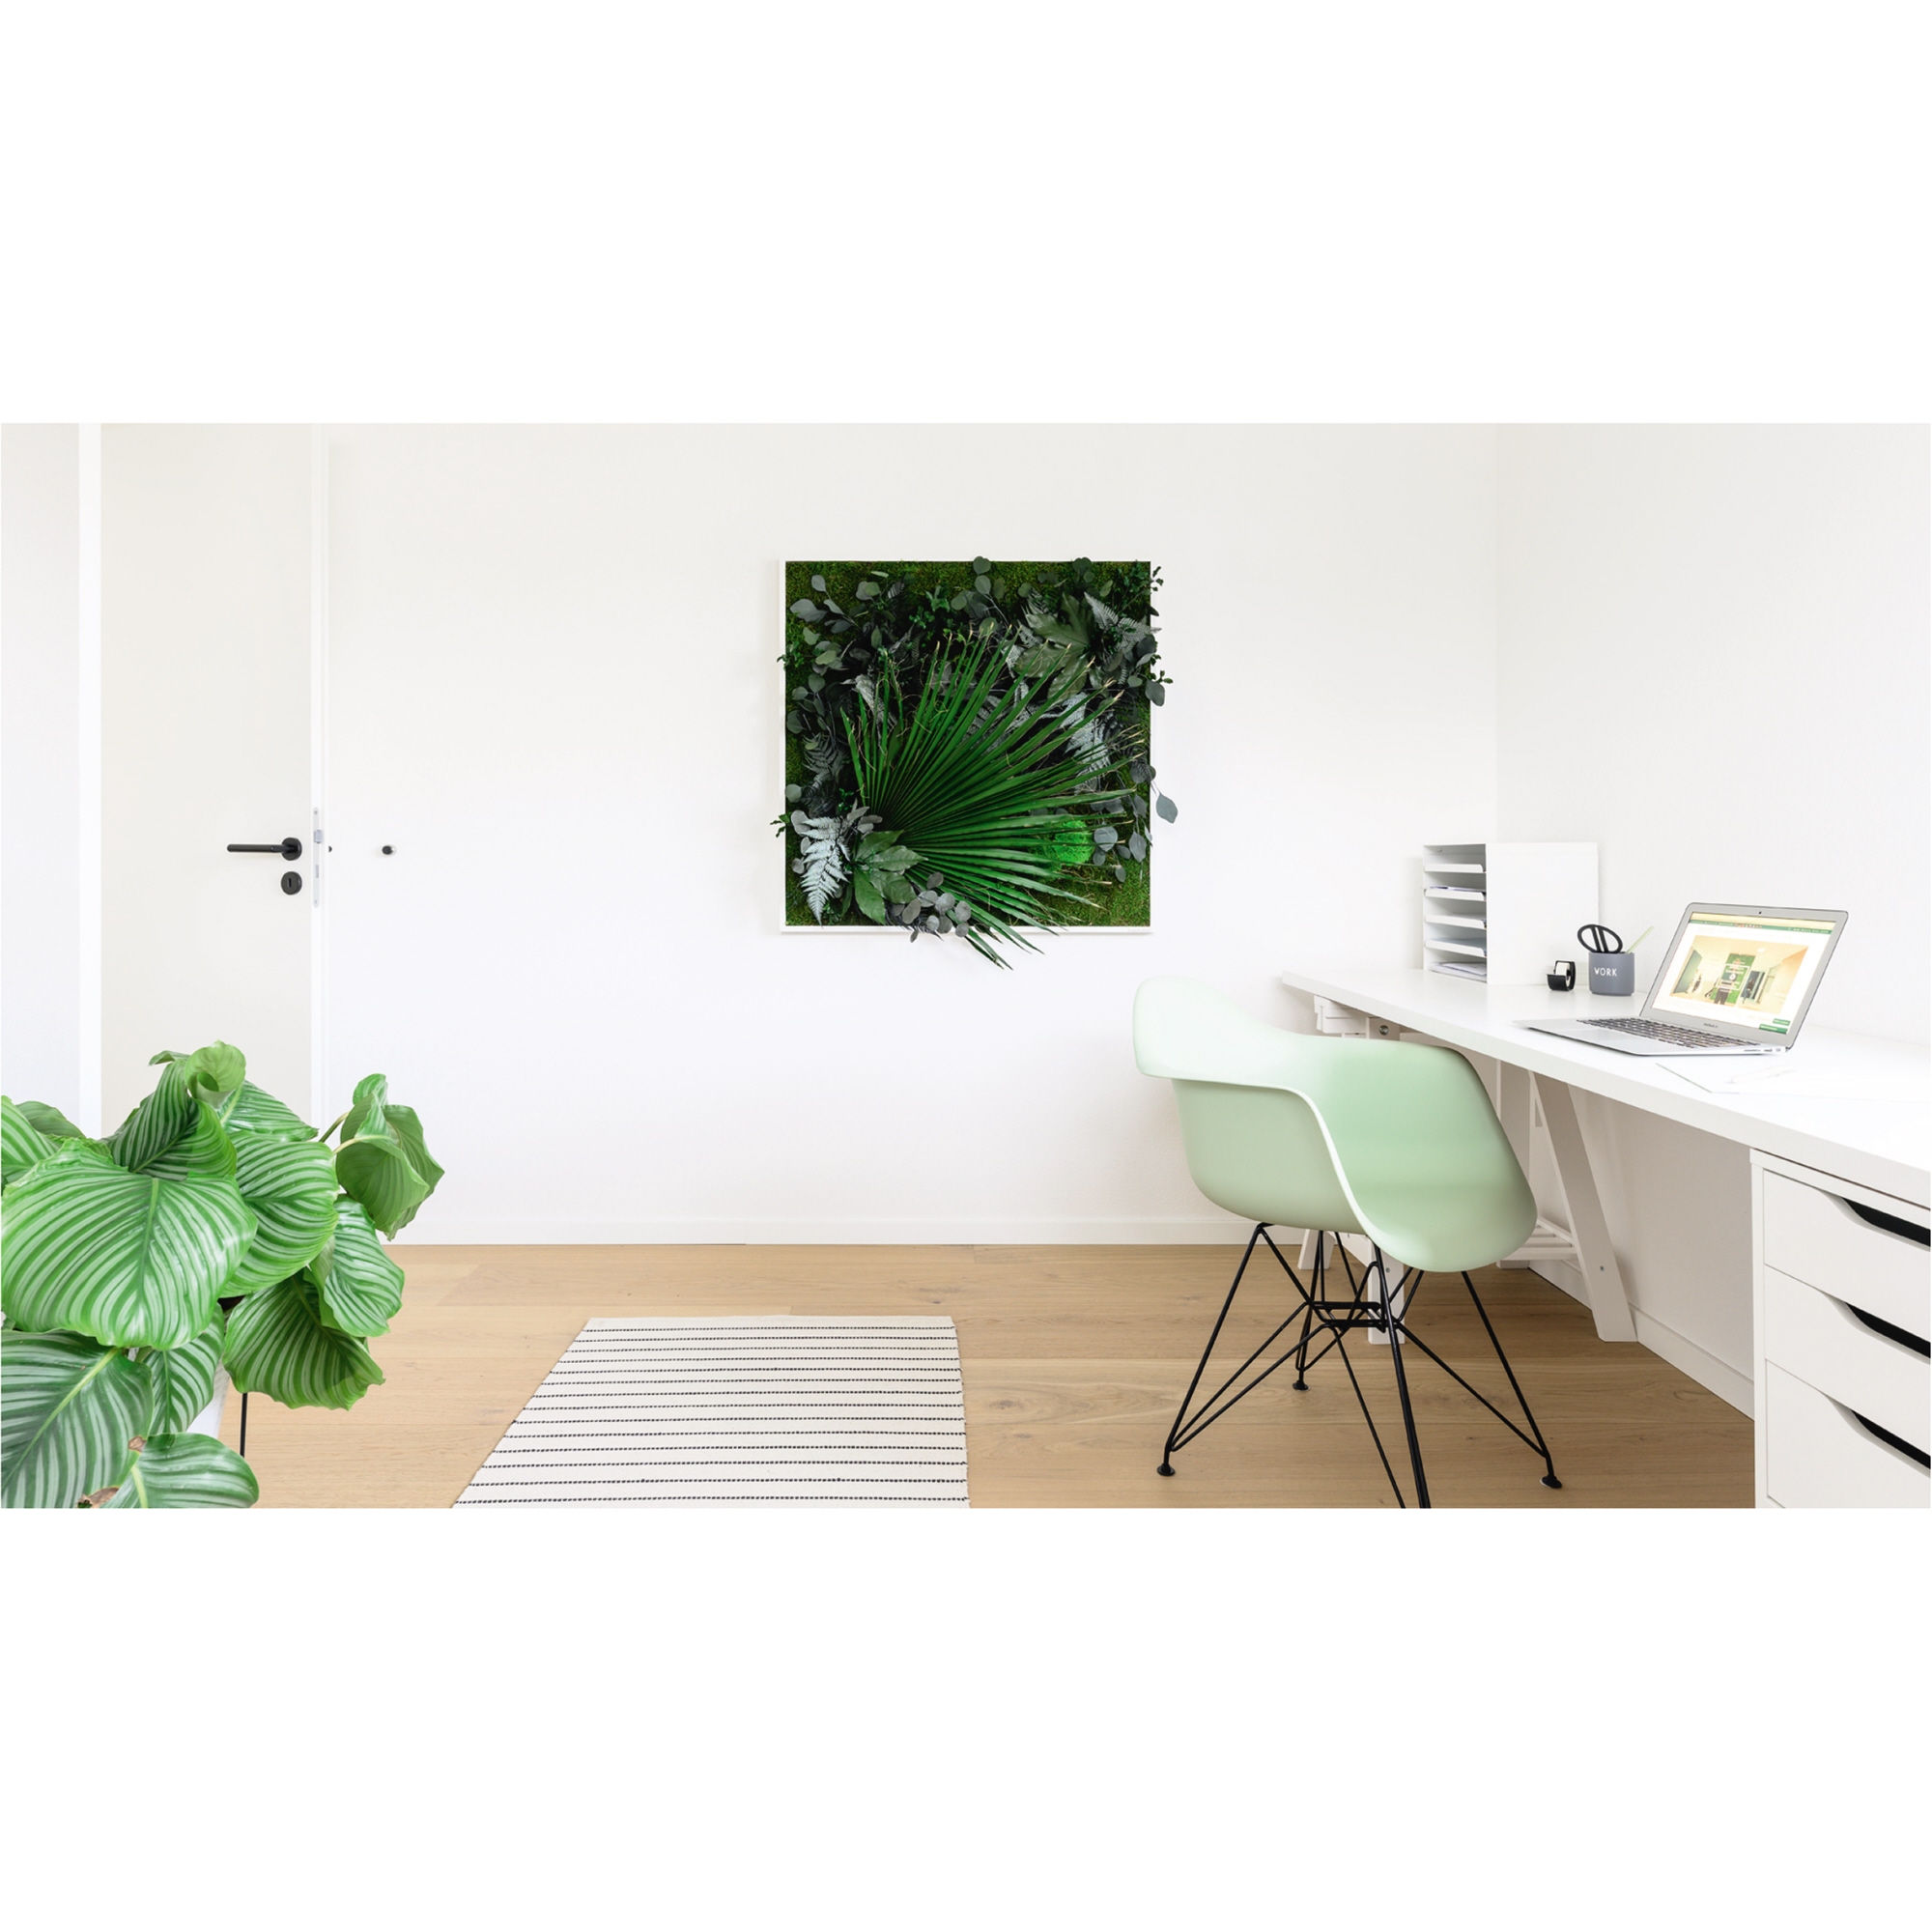 StyleGreen Pflanzenbild Dschungeldesign Moos weiß Vollholzrahmen 80 x 80 x 4 cm (B x H x T)